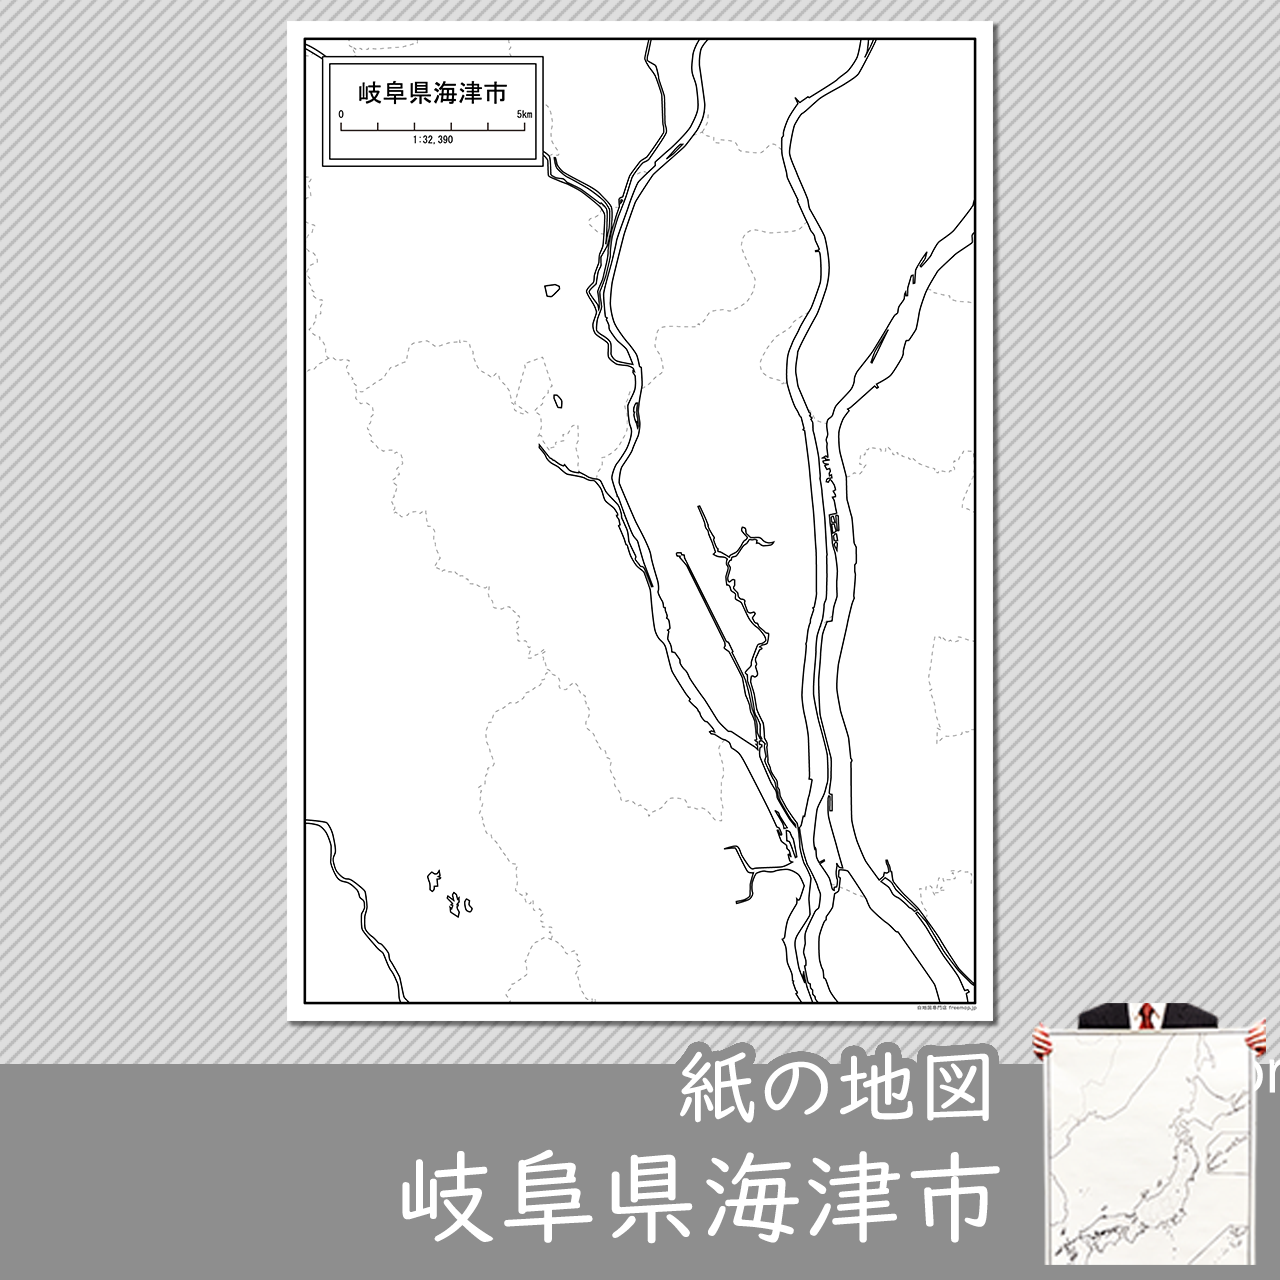 海津市の紙の白地図のサムネイル